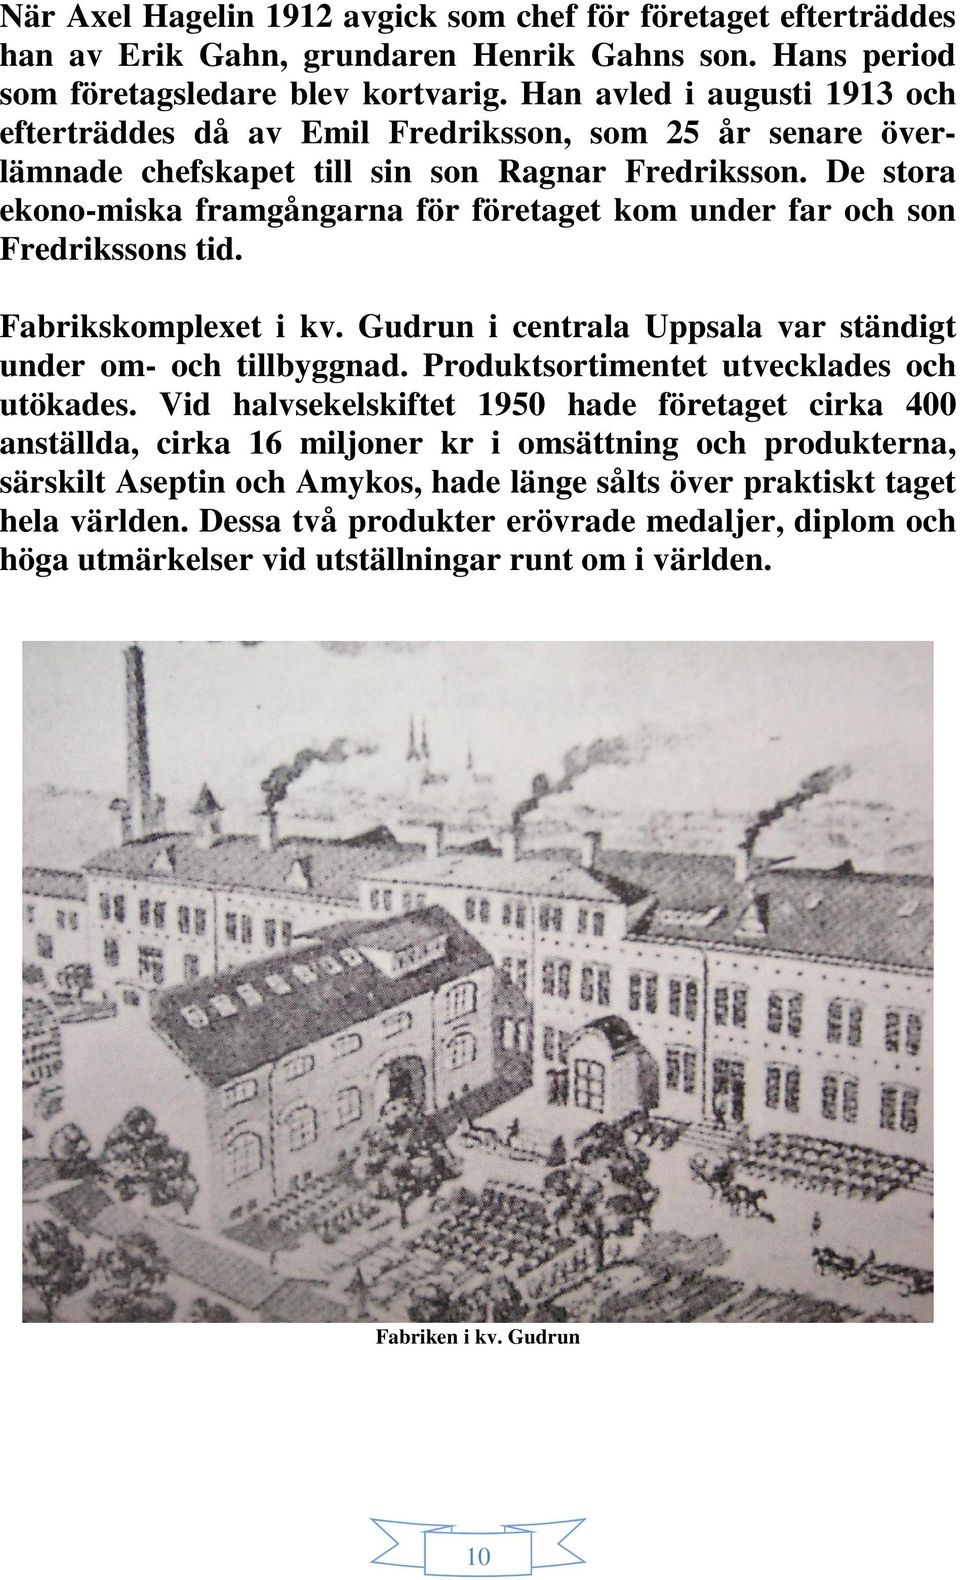 De stora ekono-miska framgångarna för företaget kom under far och son Fredrikssons tid. Fabrikskomplexet i kv. Gudrun i centrala Uppsala var ständigt under om- och tillbyggnad.